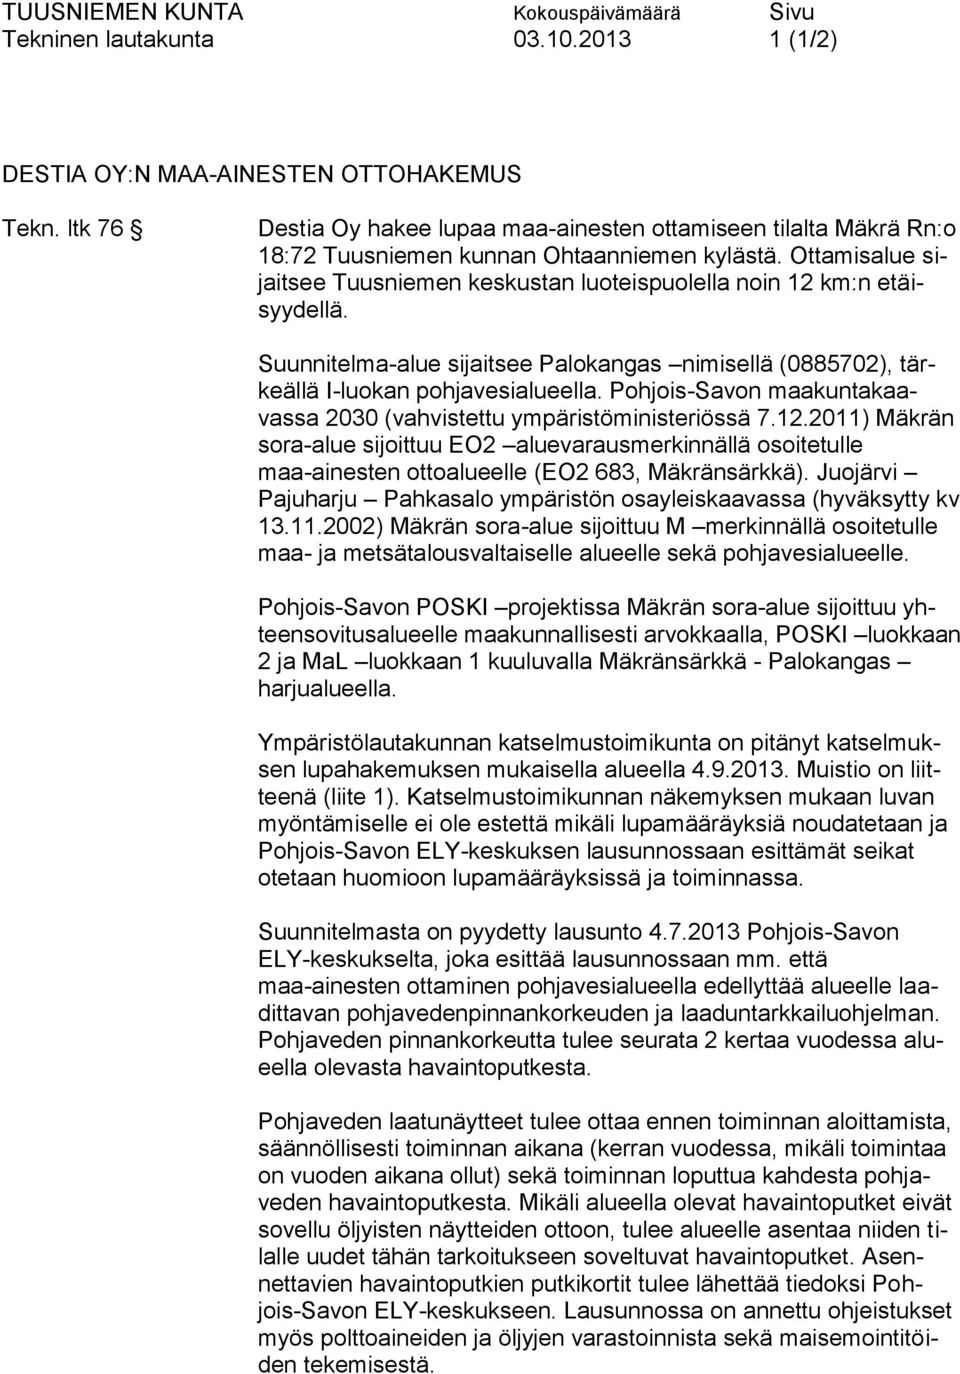 Pohjois-Savon maakuntakaavassa 2030 (vahvistettu ympäristöministeriössä 7.12.2011) Mäkrän sora-alue sijoittuu EO2 aluevarausmerkinnällä osoitetulle maa-ainesten ottoalueelle (EO2 683, Mäkränsärkkä).